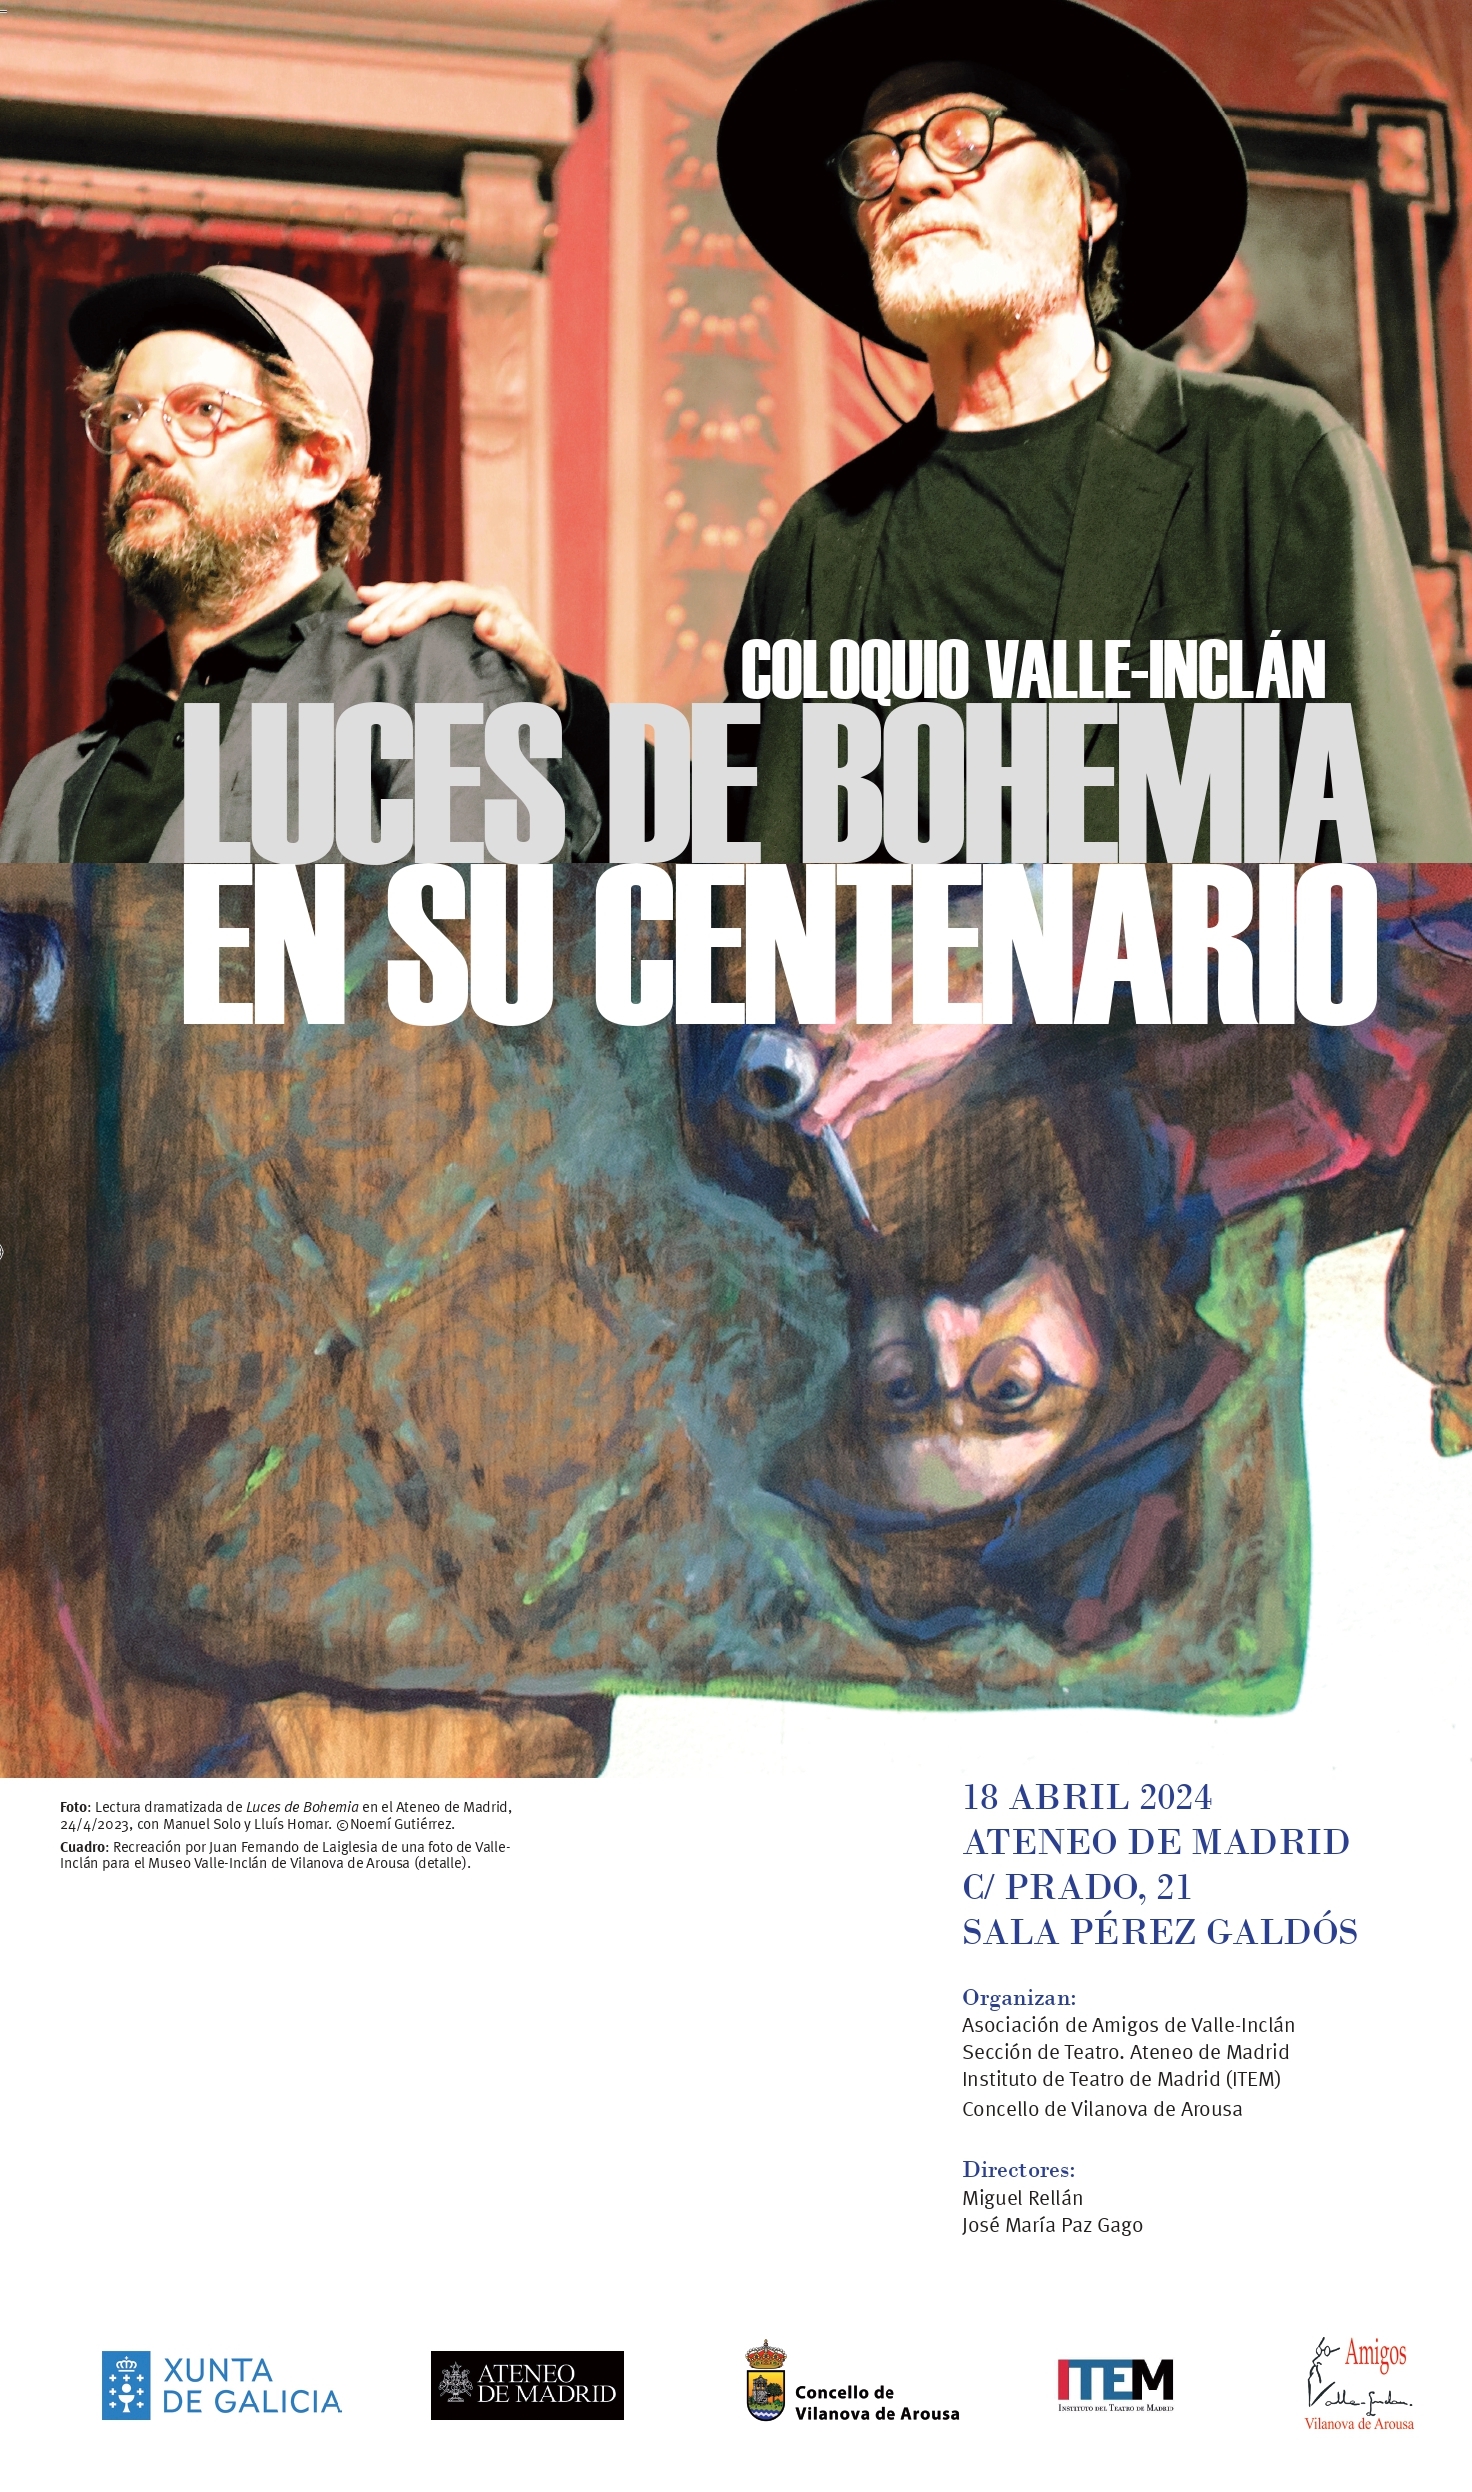 Coloquio Valle-Inclán: Luces de bohemia en su centenario